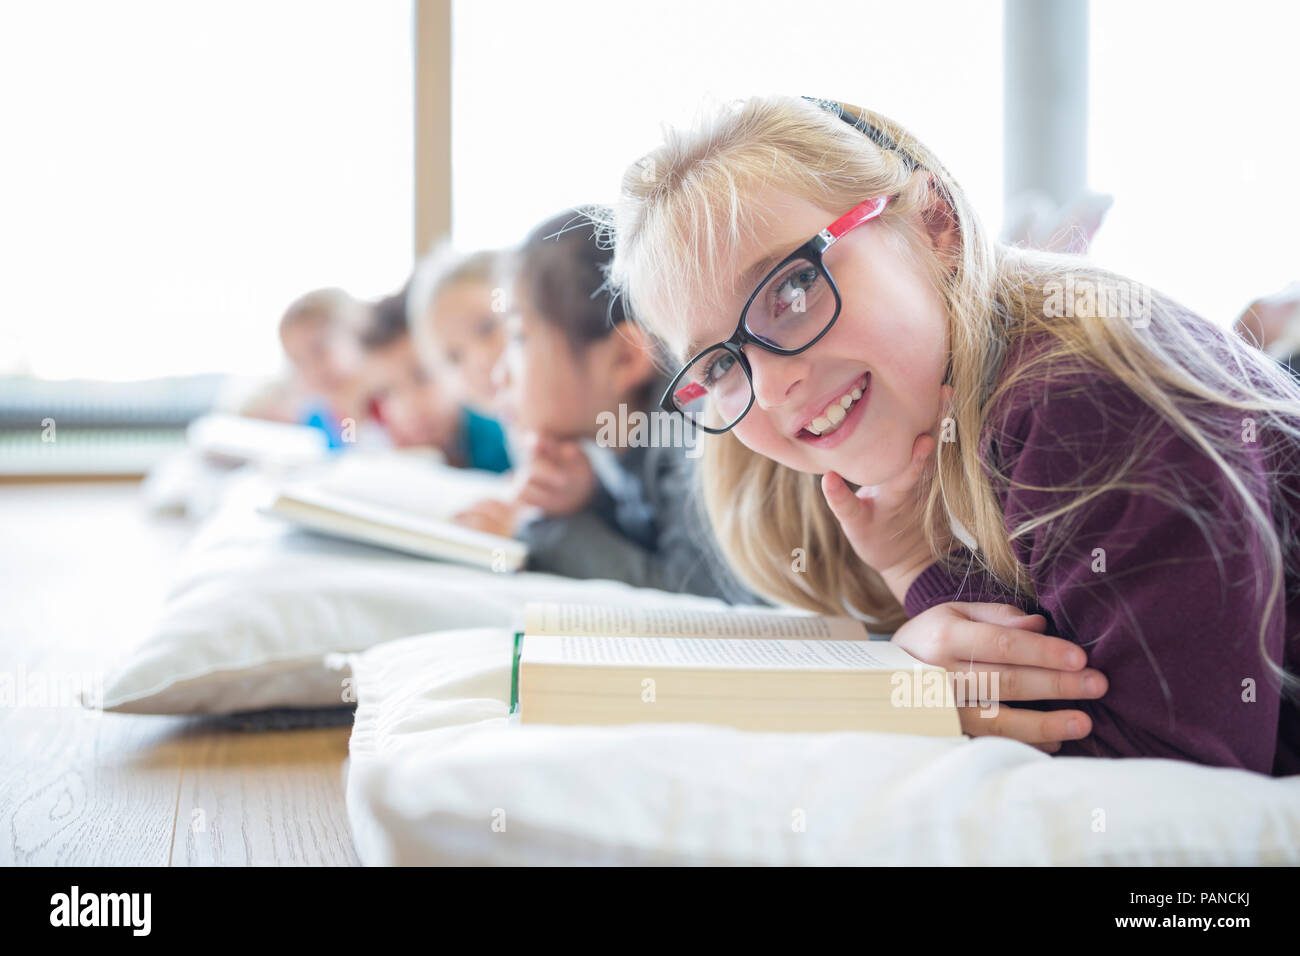 Ritratto di sorridere schoolgirl sdraiato sul pavimento con i compagni di classe la lettura di libri di scuola in sala pausa Foto Stock